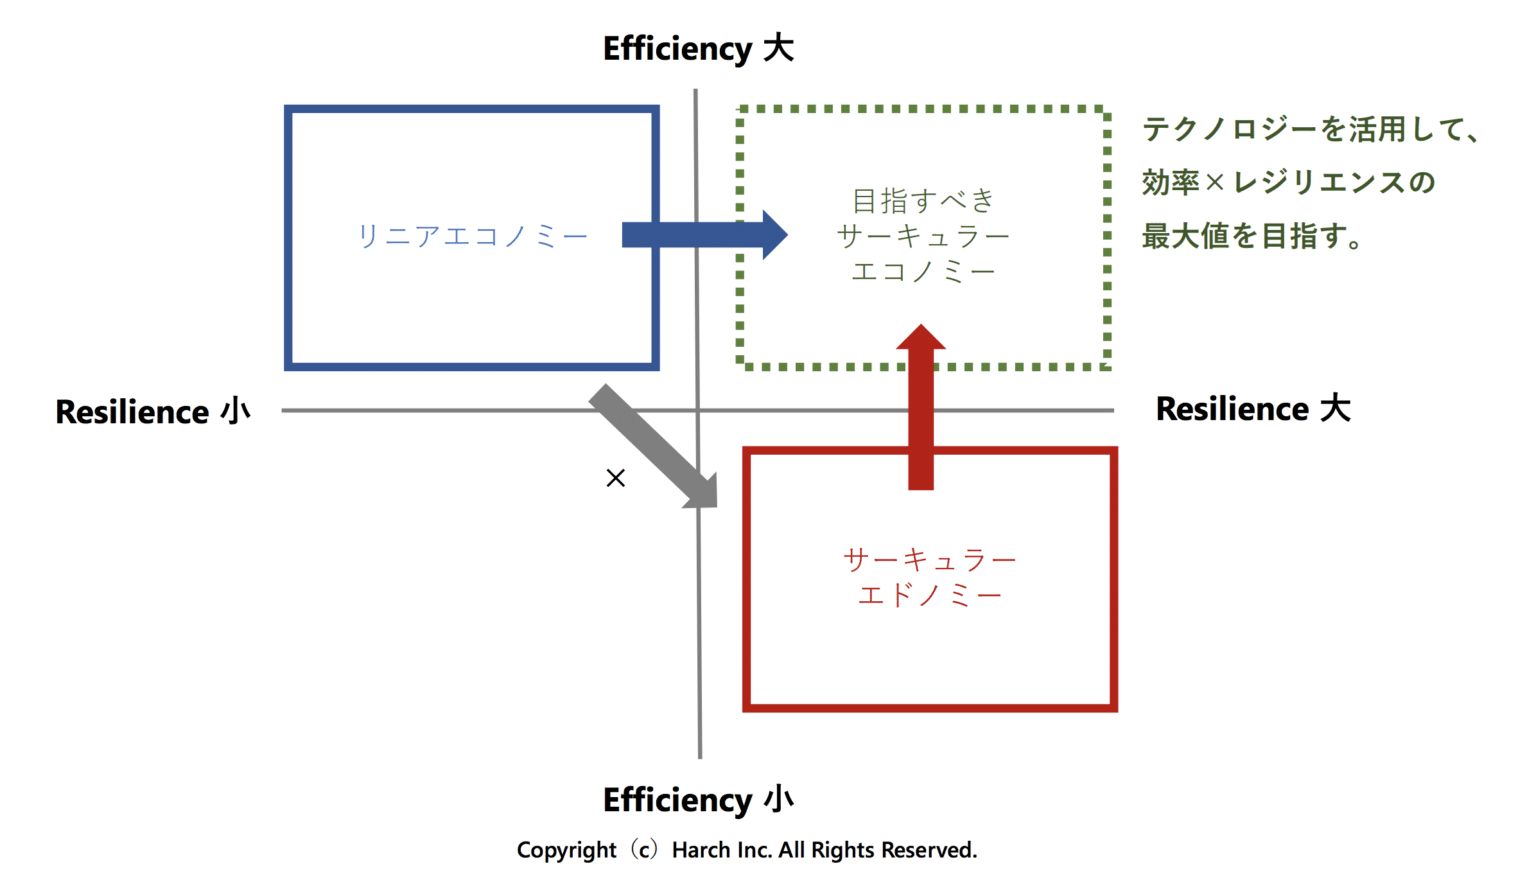 「効率性（Efficiency）」と「レジリエンス（Resilience）」の関係図（加藤佑編集長 提供）